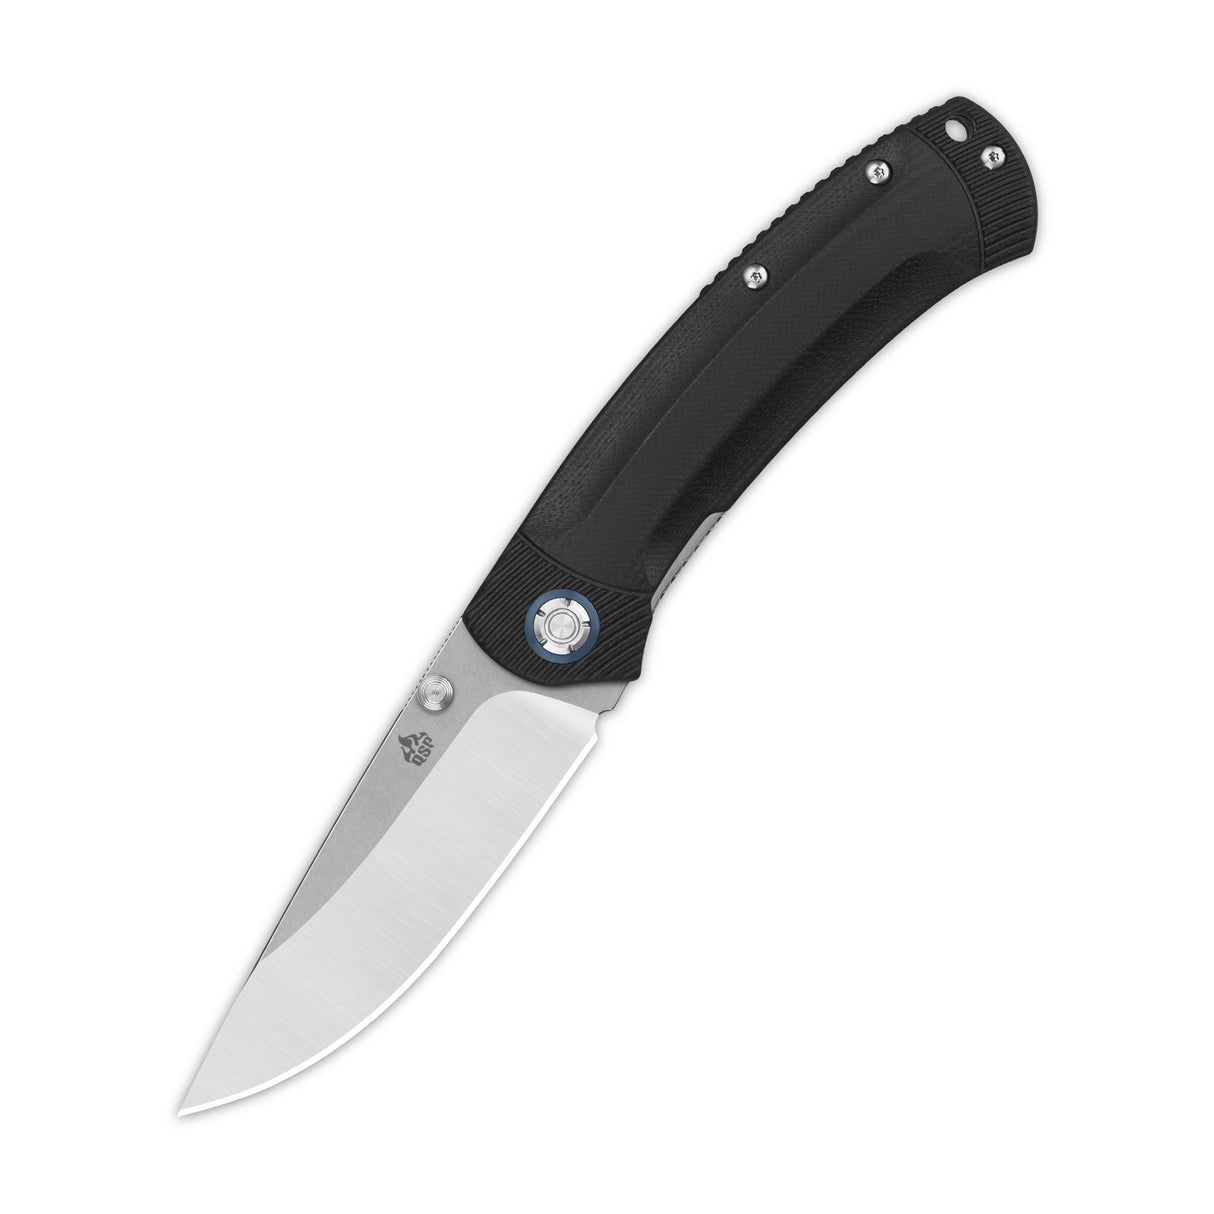 QSP Copperhead Liner Lock Pocket Knife 14C28N Blade G10 Handle